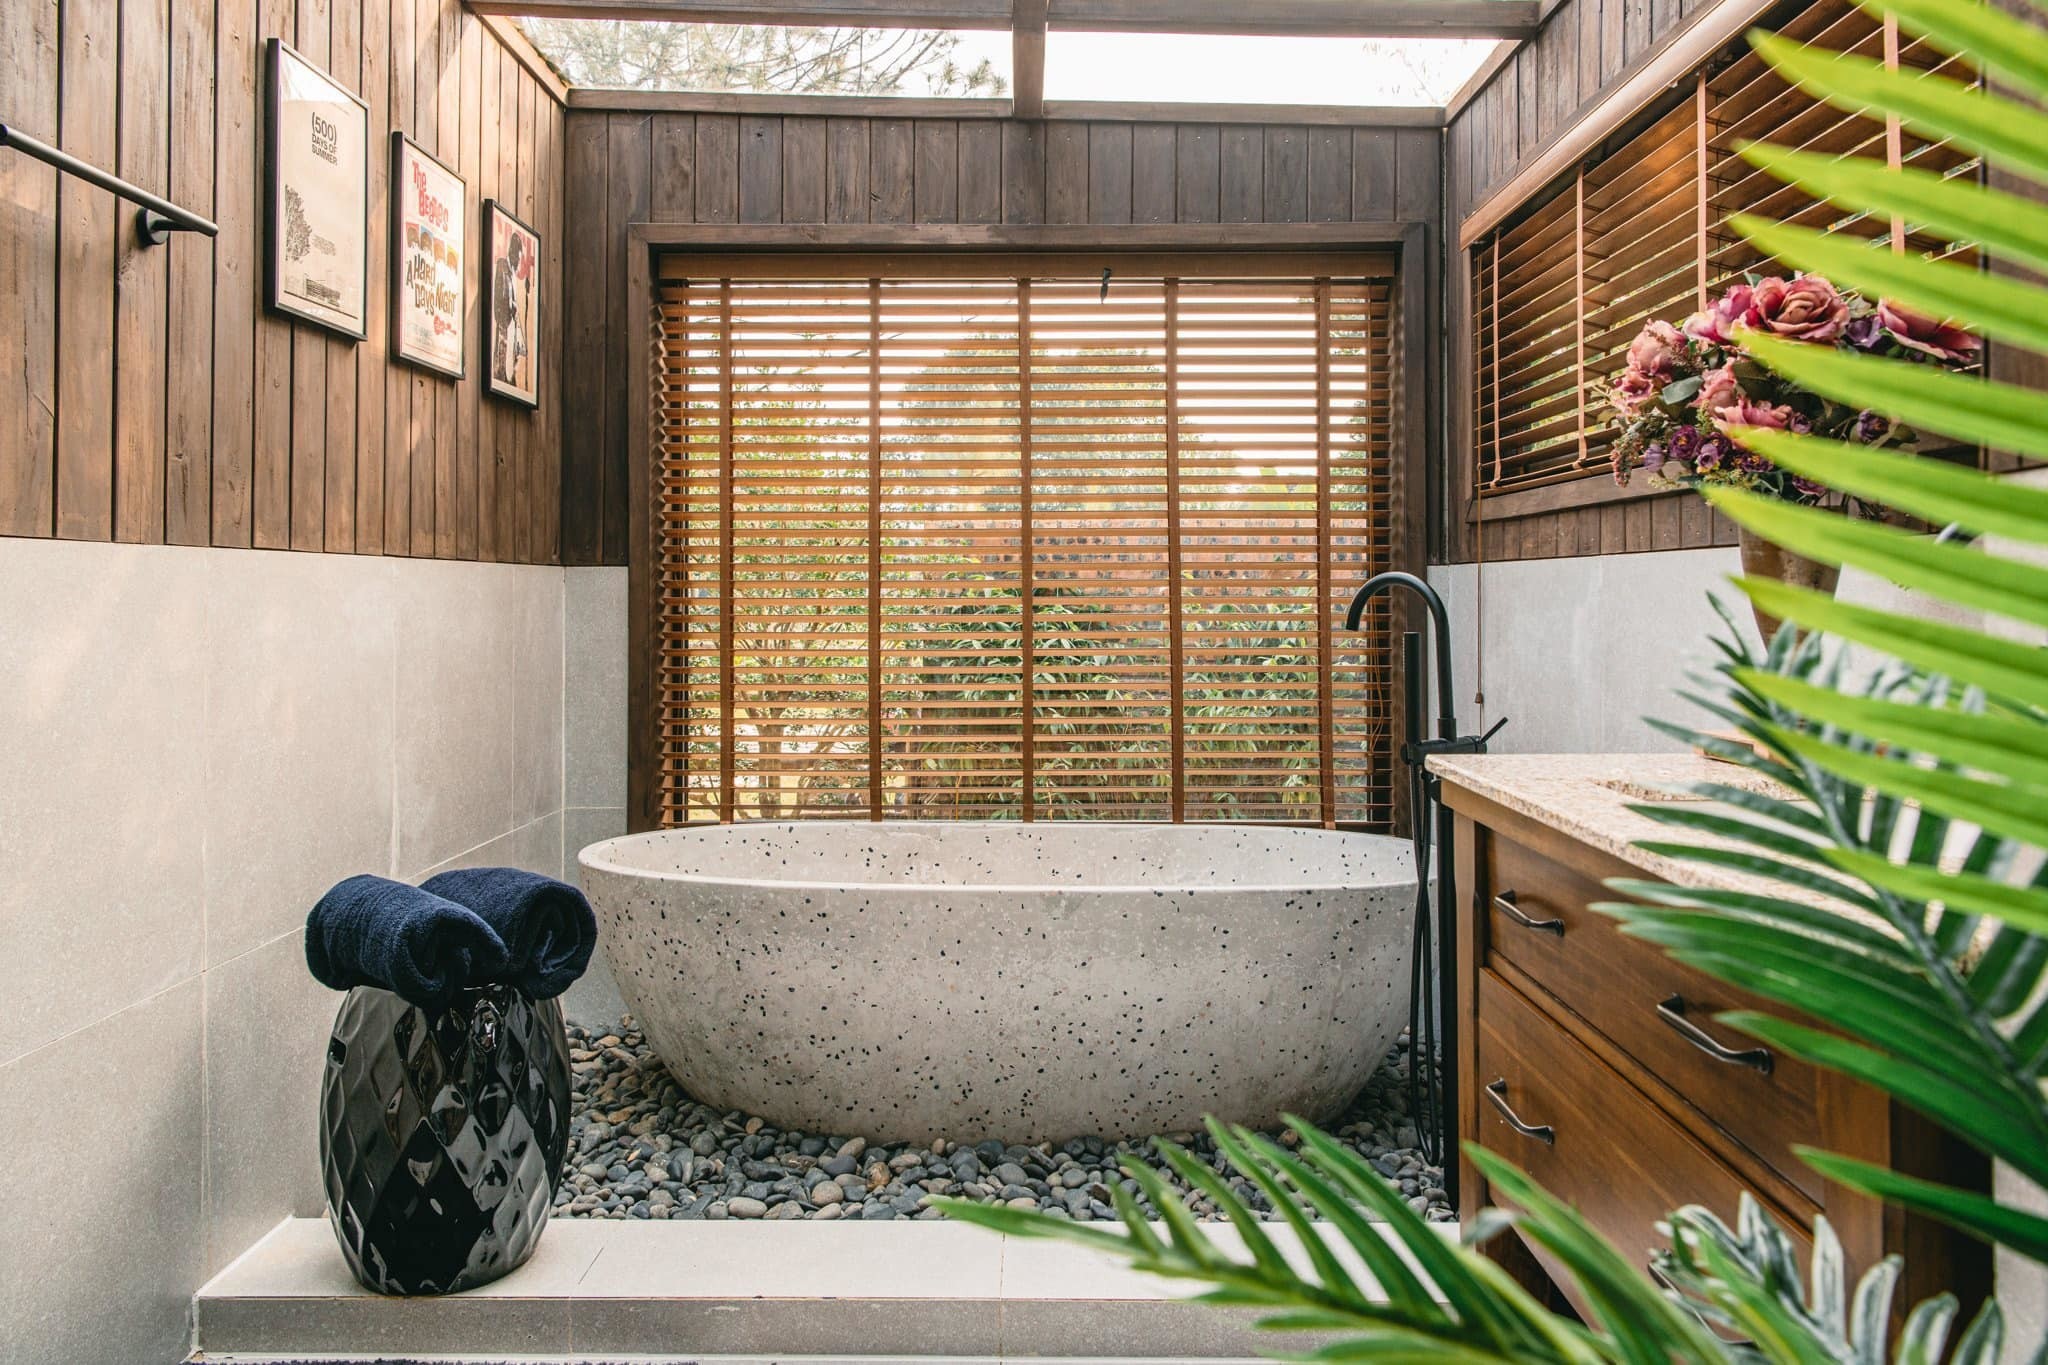 
Trong phòng tắm có sự xuất hiện của cây xanh, giúp cho gian phòng thêm gần gũi với thiên nhiên hơn
